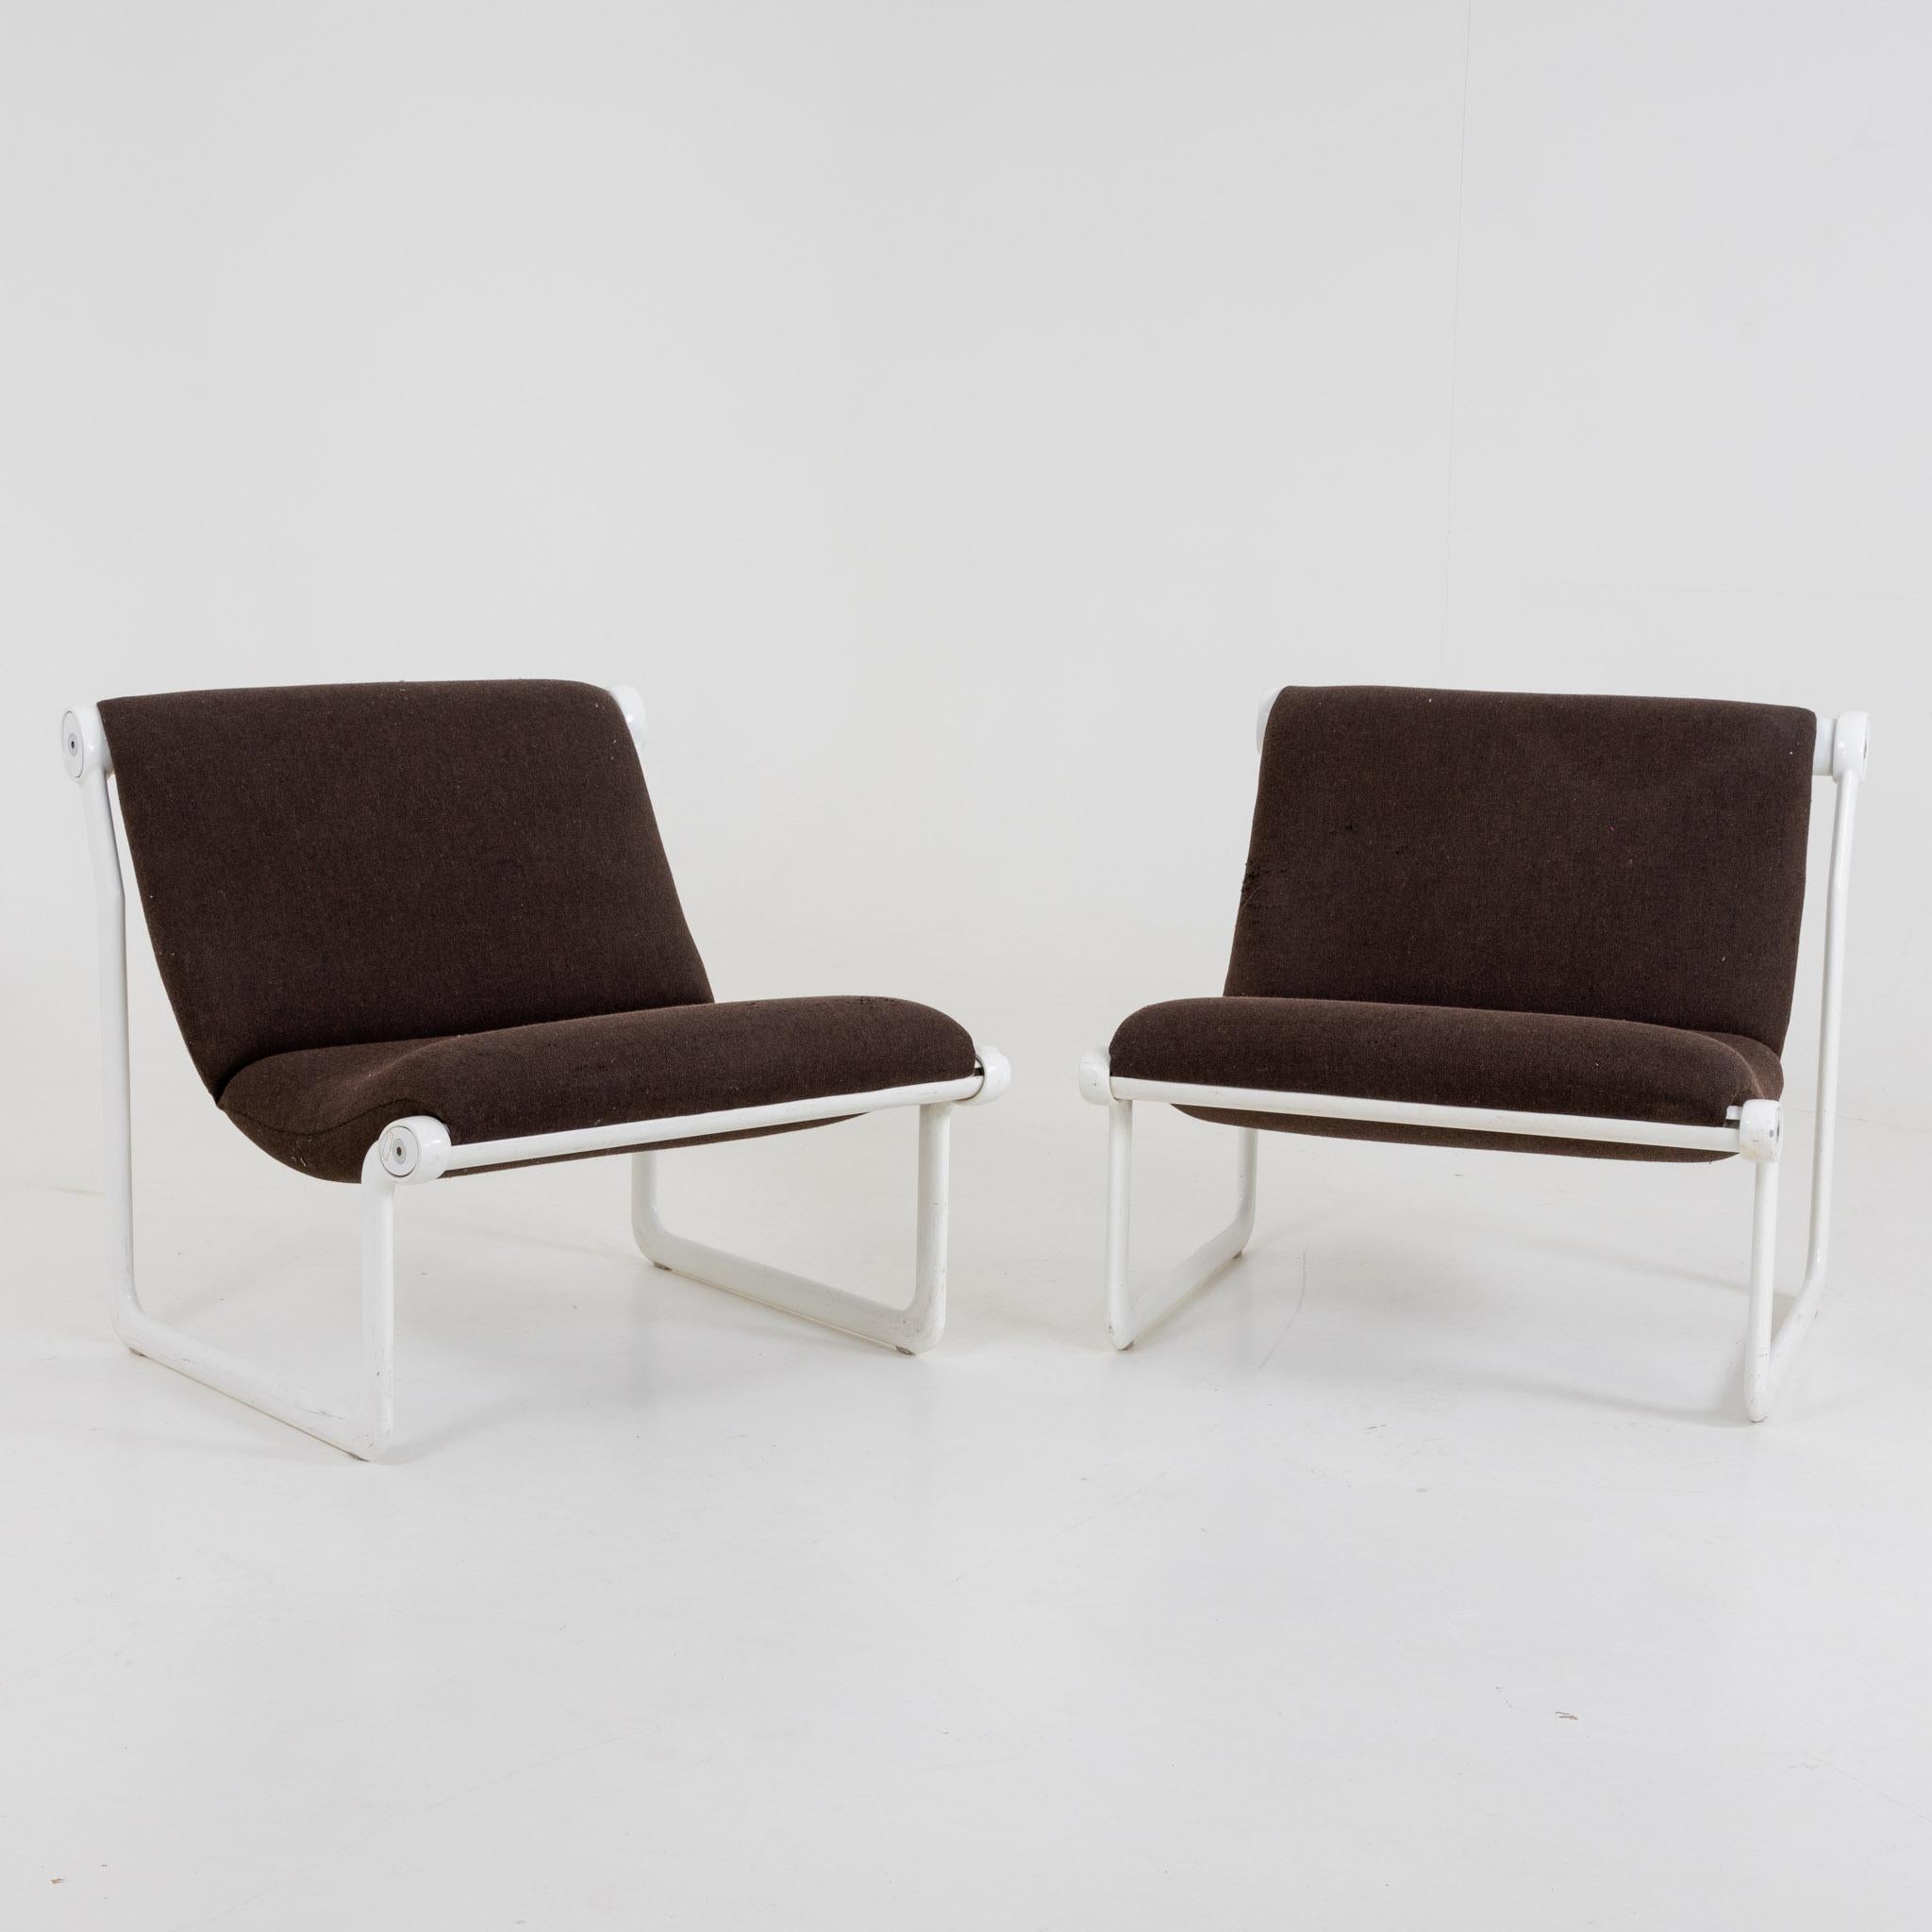 Ein Paar Sling Lounge Stühle mit weißem Aluminiumrahmen und braunem Bezug.